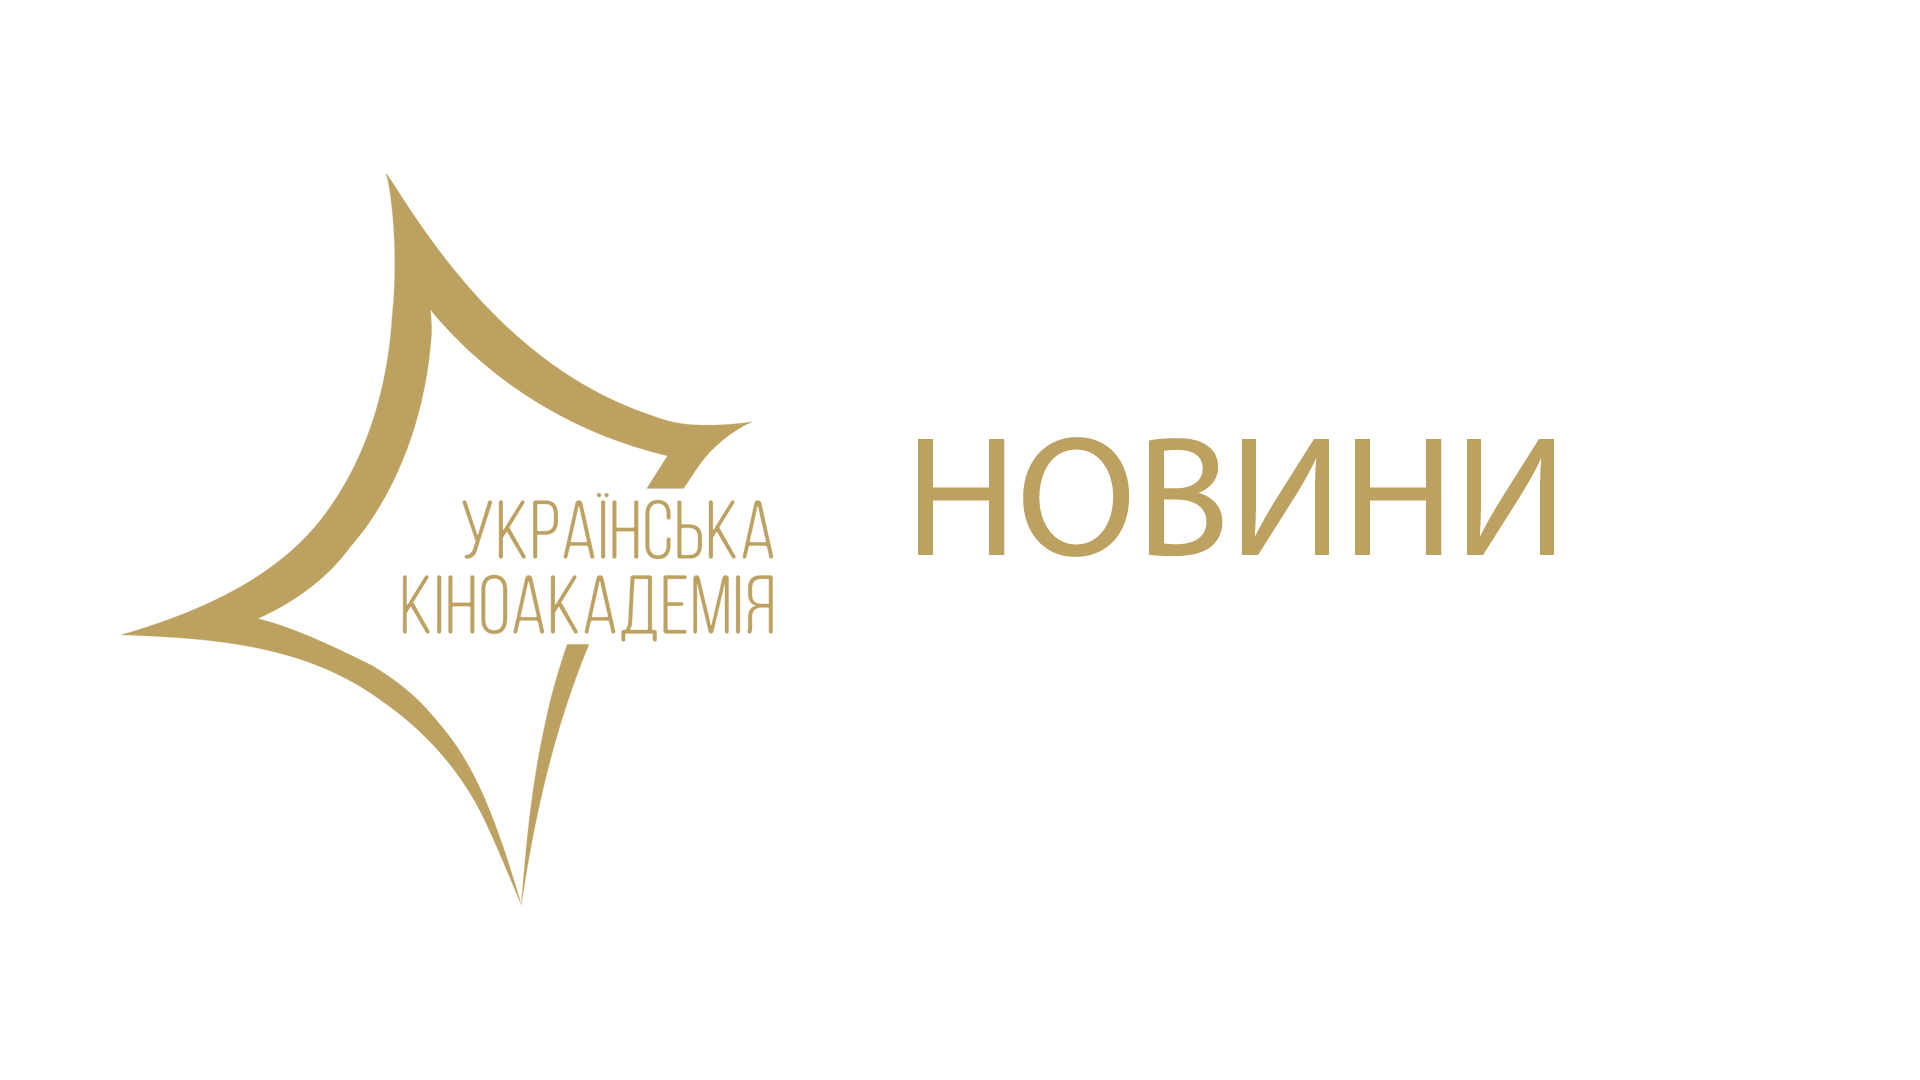 Українська кіноакадемія разом з компанією 2FLAME створили відеоролик на підтримку режисера, матеріали надало радіо “Свобода”